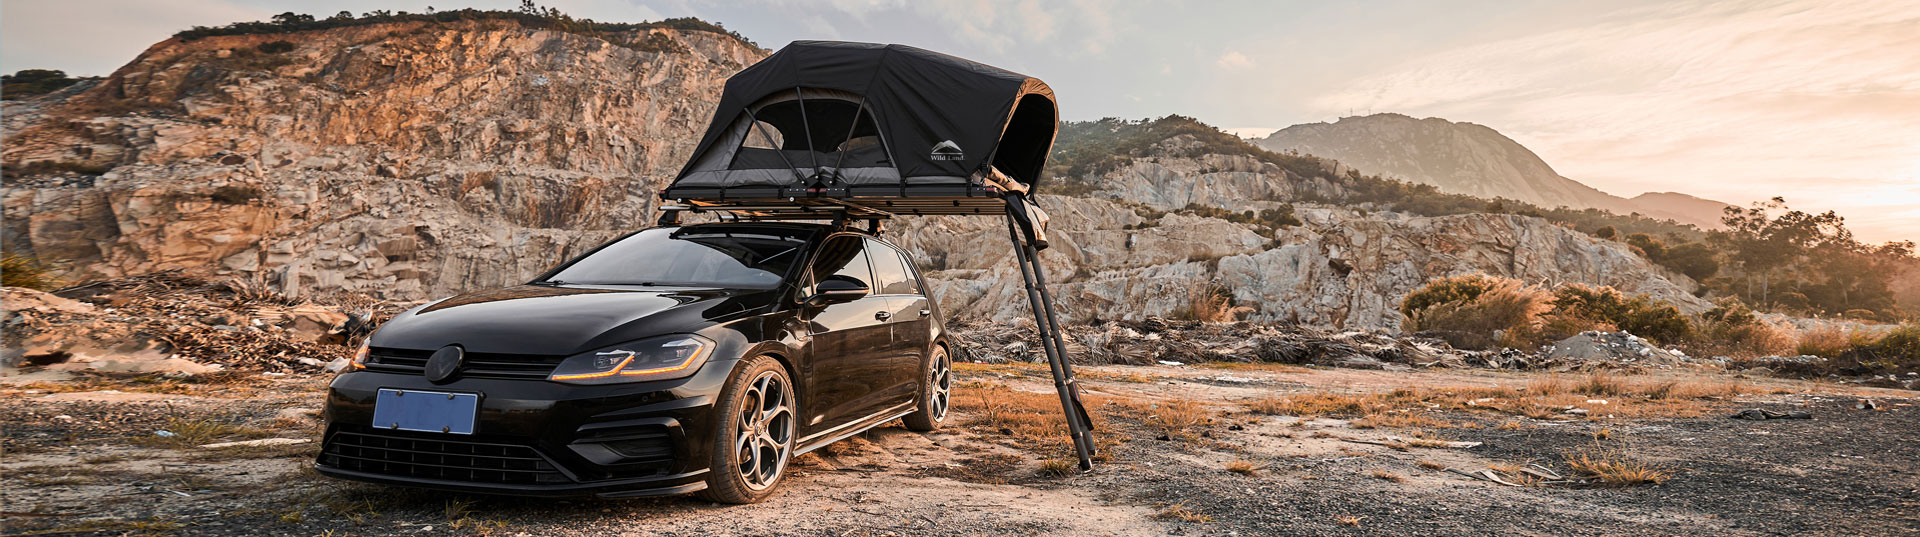 Početni nivo Wild Land rasklopivi krovni šator u stilu automobila za limuzinu i solo kampiranje